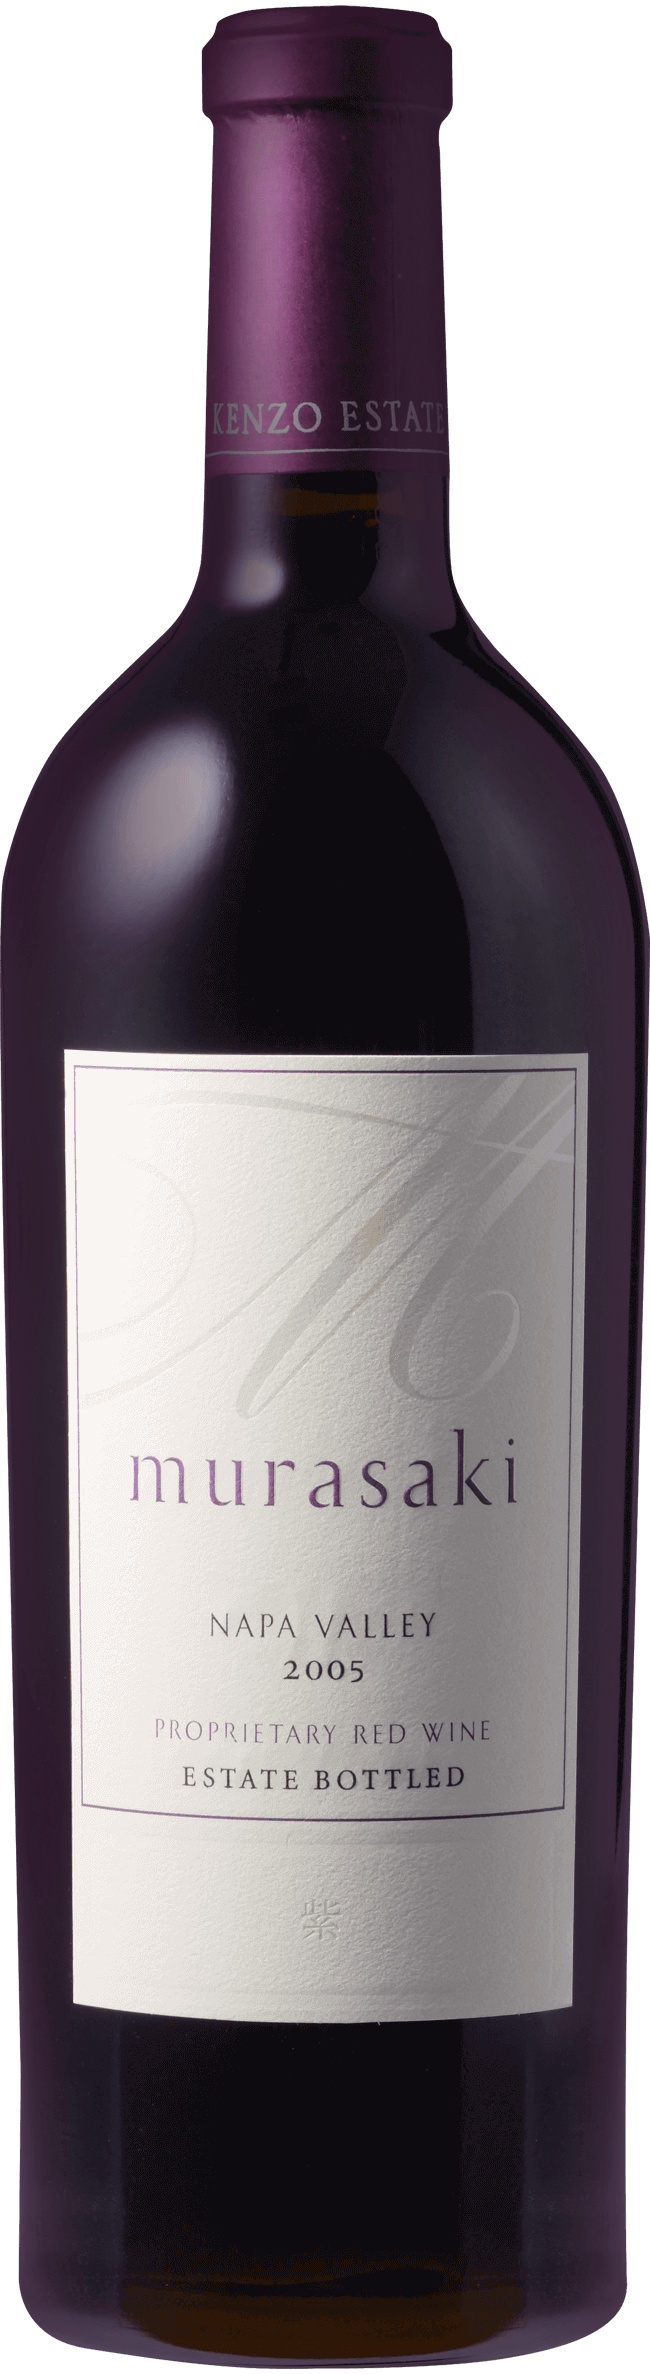 ケンゾーエステート 紫 murasaki 2017 750ml - ワイン